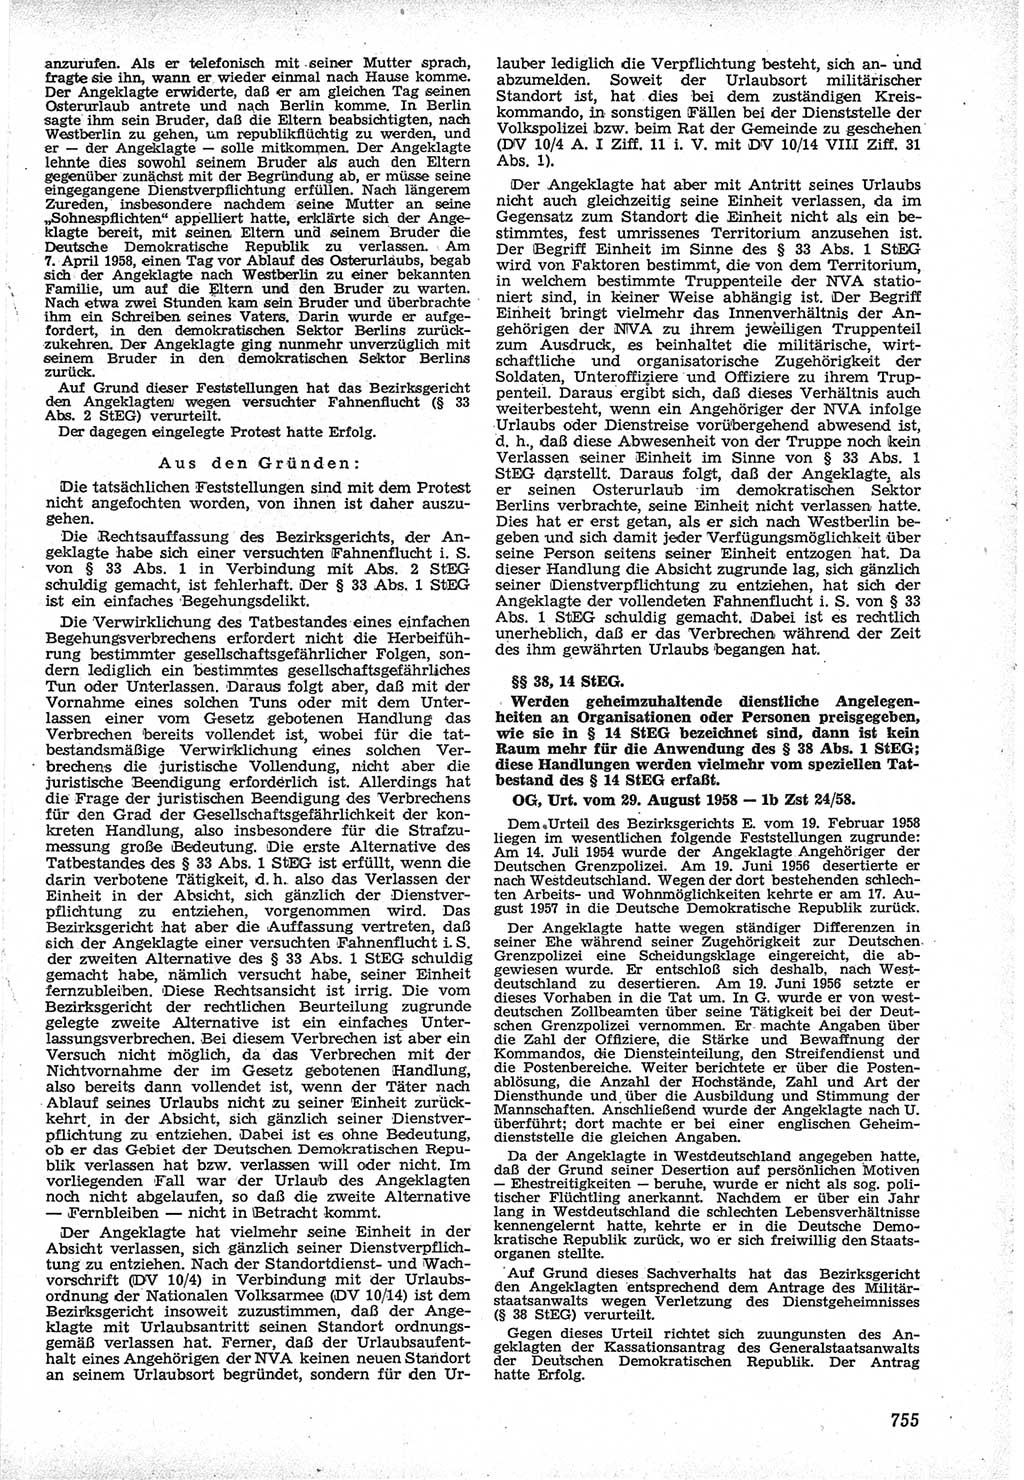 Neue Justiz (NJ), Zeitschrift für Recht und Rechtswissenschaft [Deutsche Demokratische Republik (DDR)], 12. Jahrgang 1958, Seite 755 (NJ DDR 1958, S. 755)